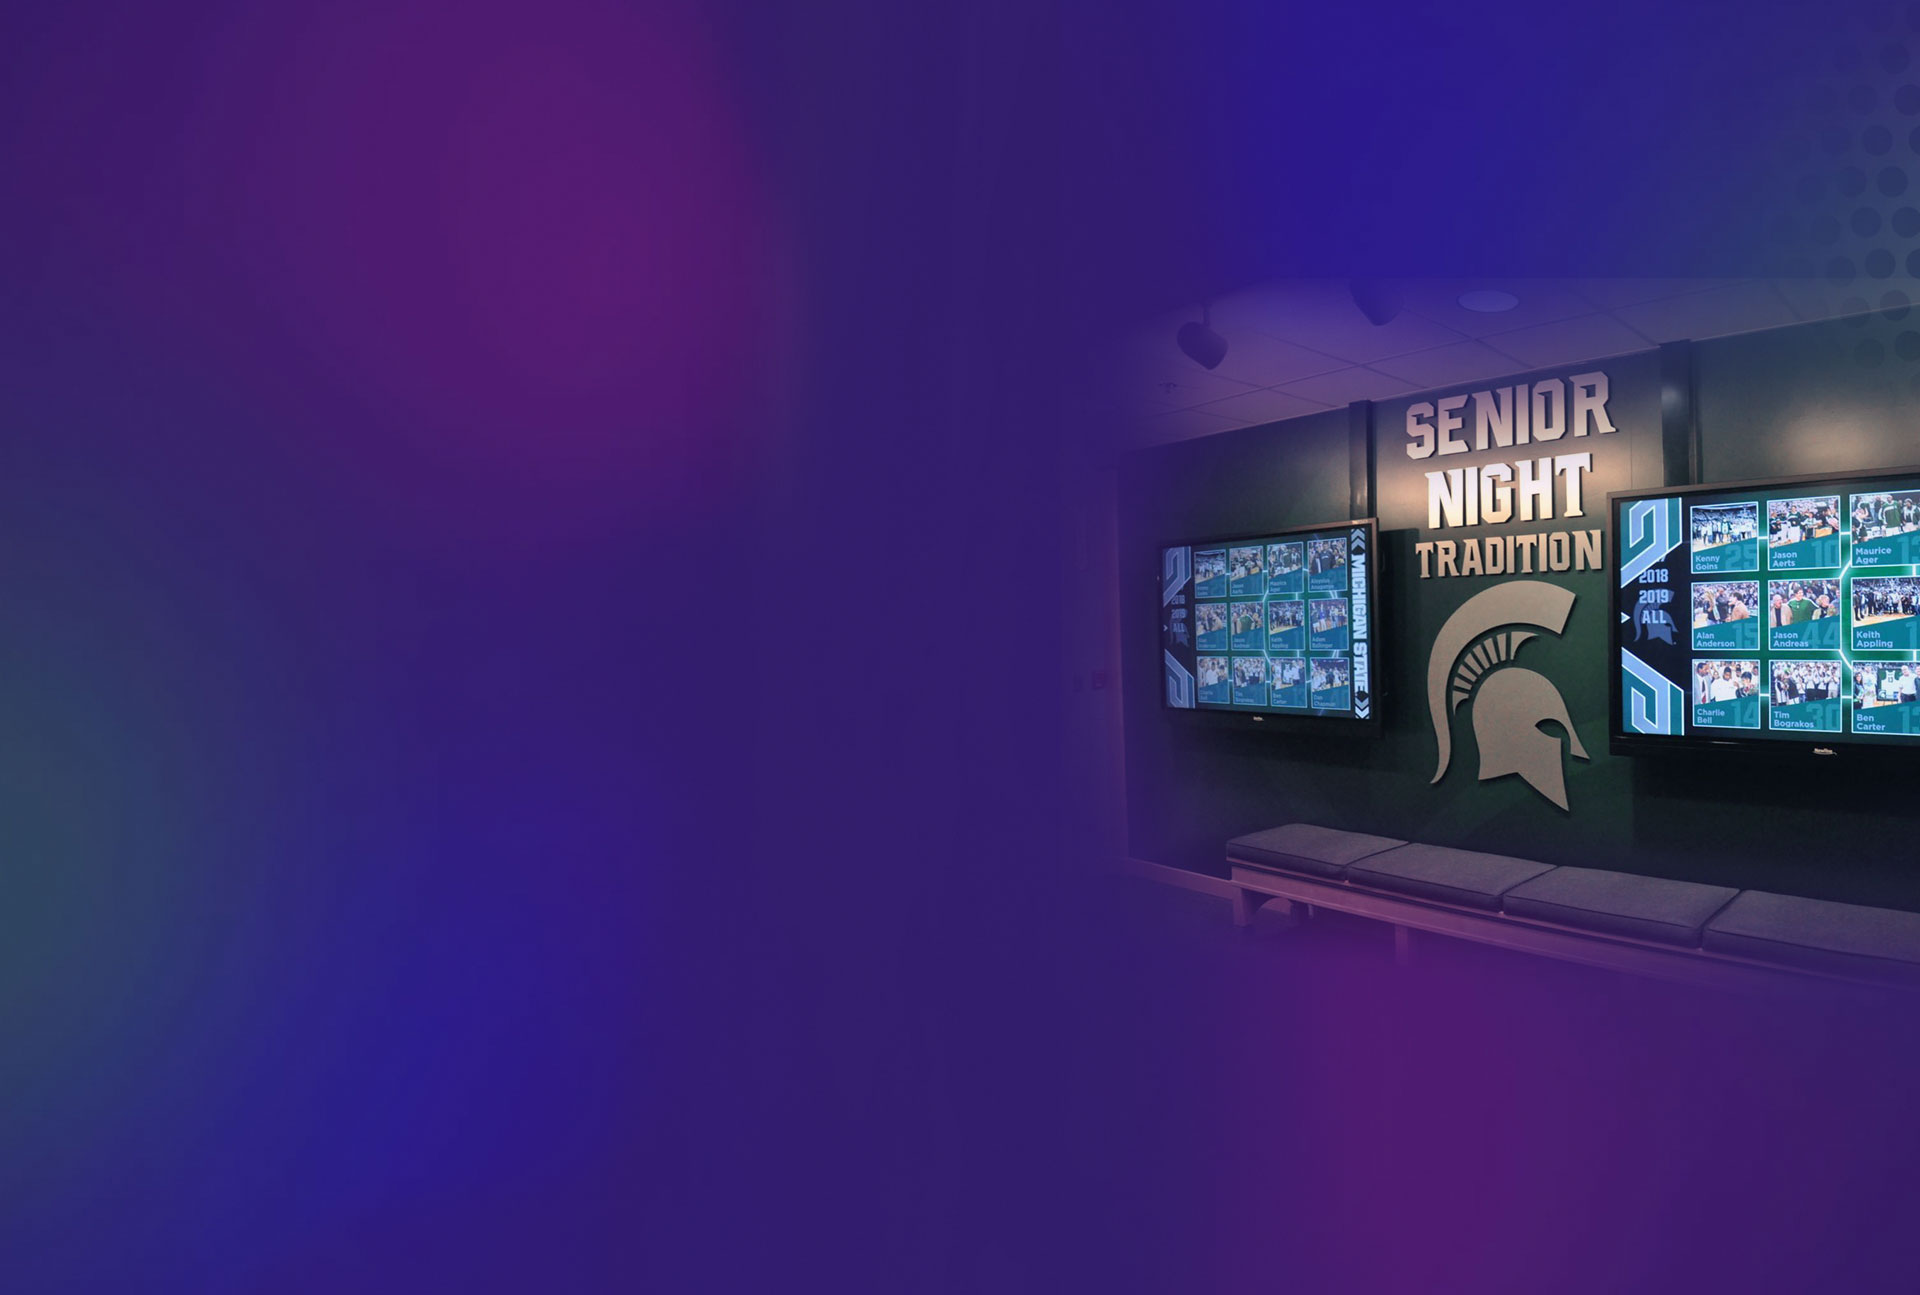 Immagine di riferimento del wall of fame della Michigan State University che utilizza la tecnologia di visualizzazione dei lettori digital signage BrightSign